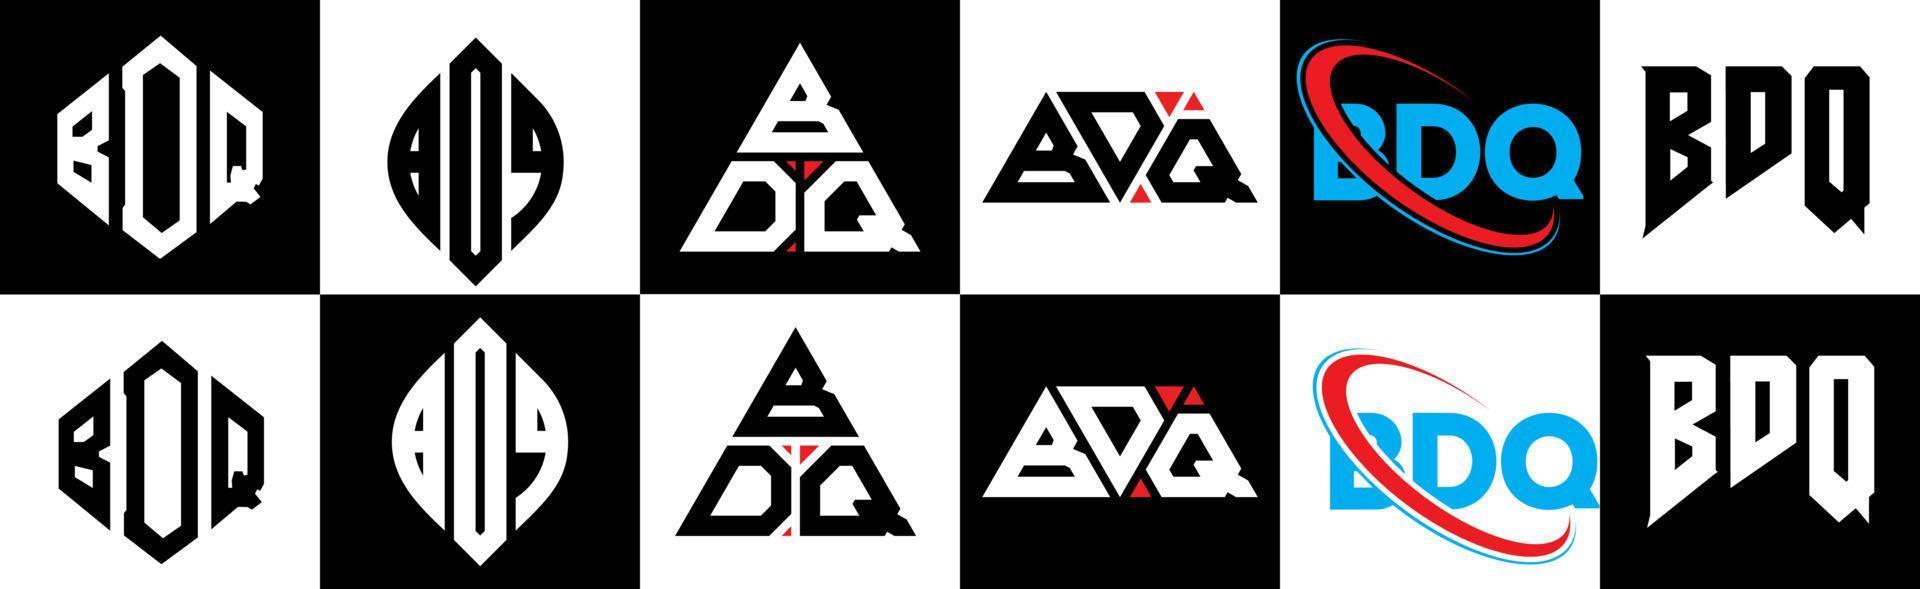 diseño de logotipo de letra bdq en seis estilos. bdq polígono, círculo, triángulo, hexágono, estilo plano y simple con logotipo de letra de variación de color blanco y negro en una mesa de trabajo. logotipo bdq minimalista y clásico vector